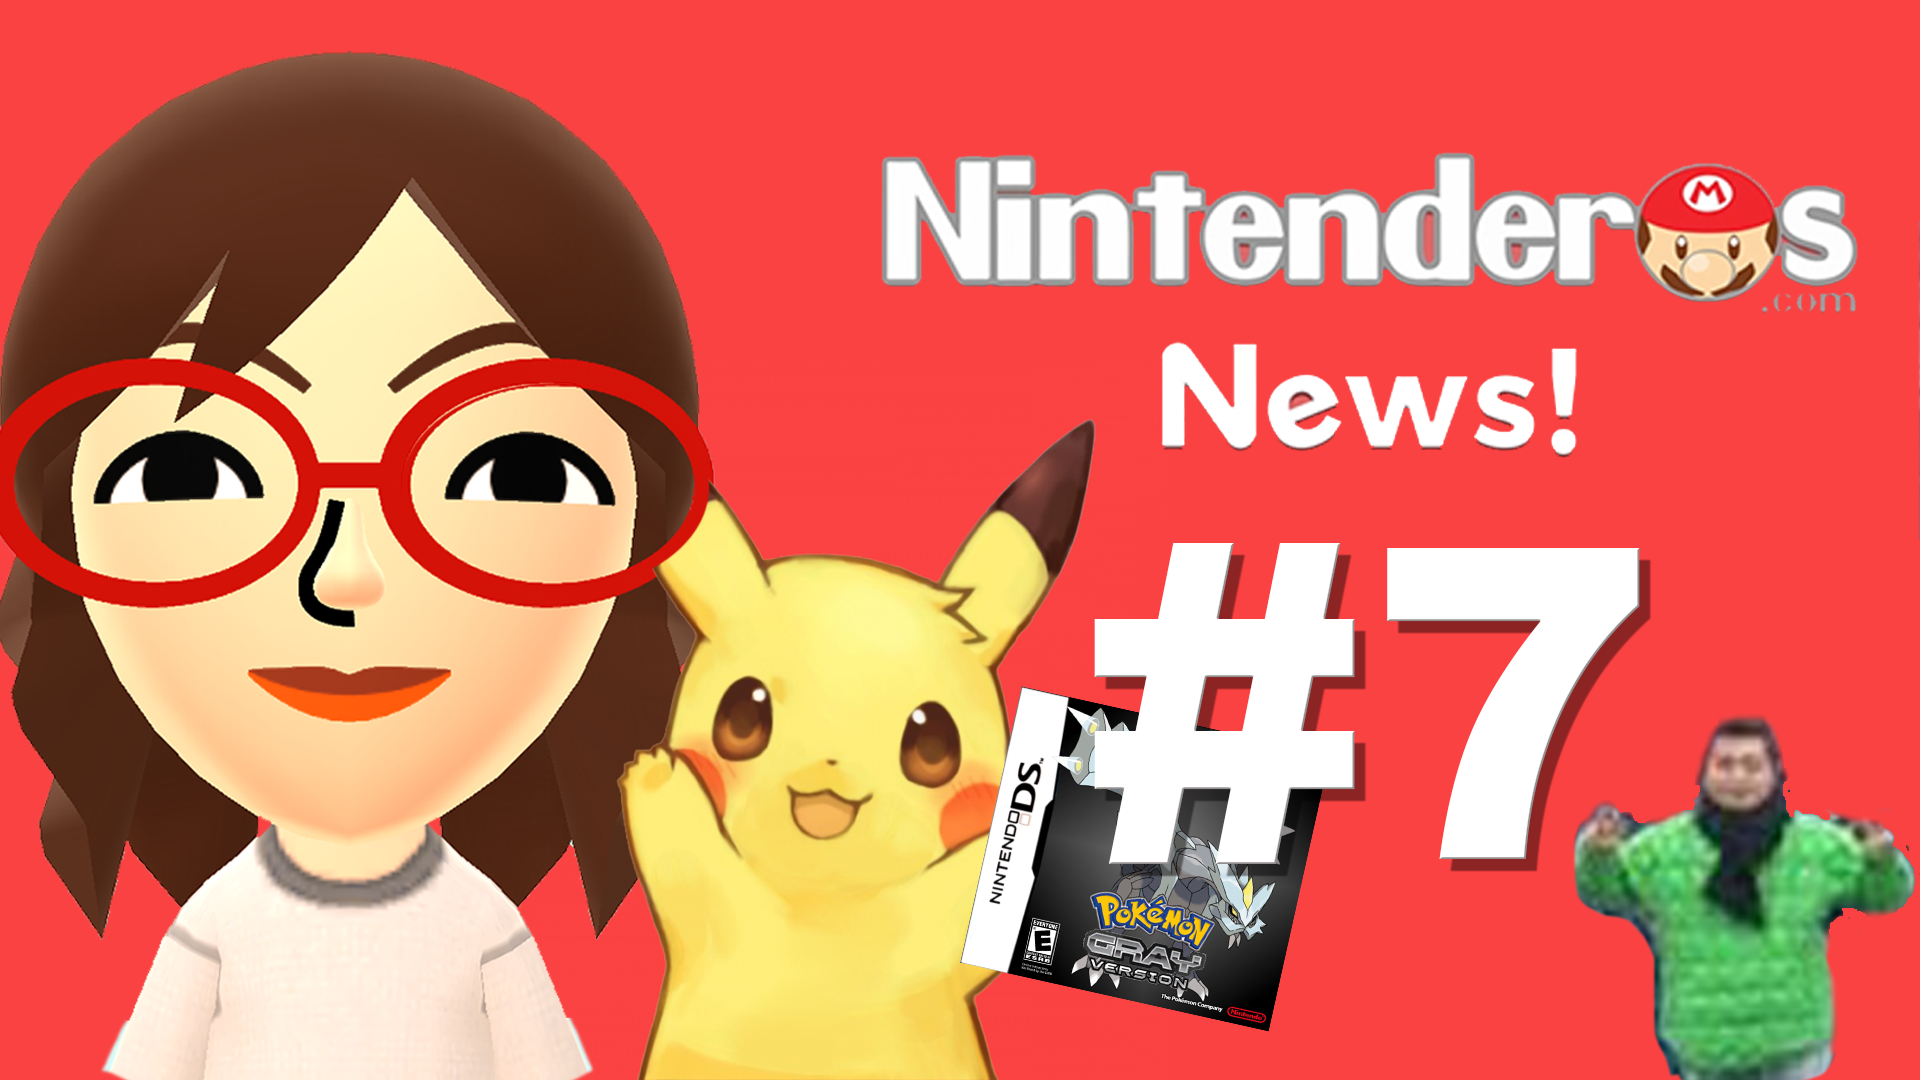 Nintenderos News! #7 El mal en Nintendo, ganadores del Splatfest, Pokémon Gris y más